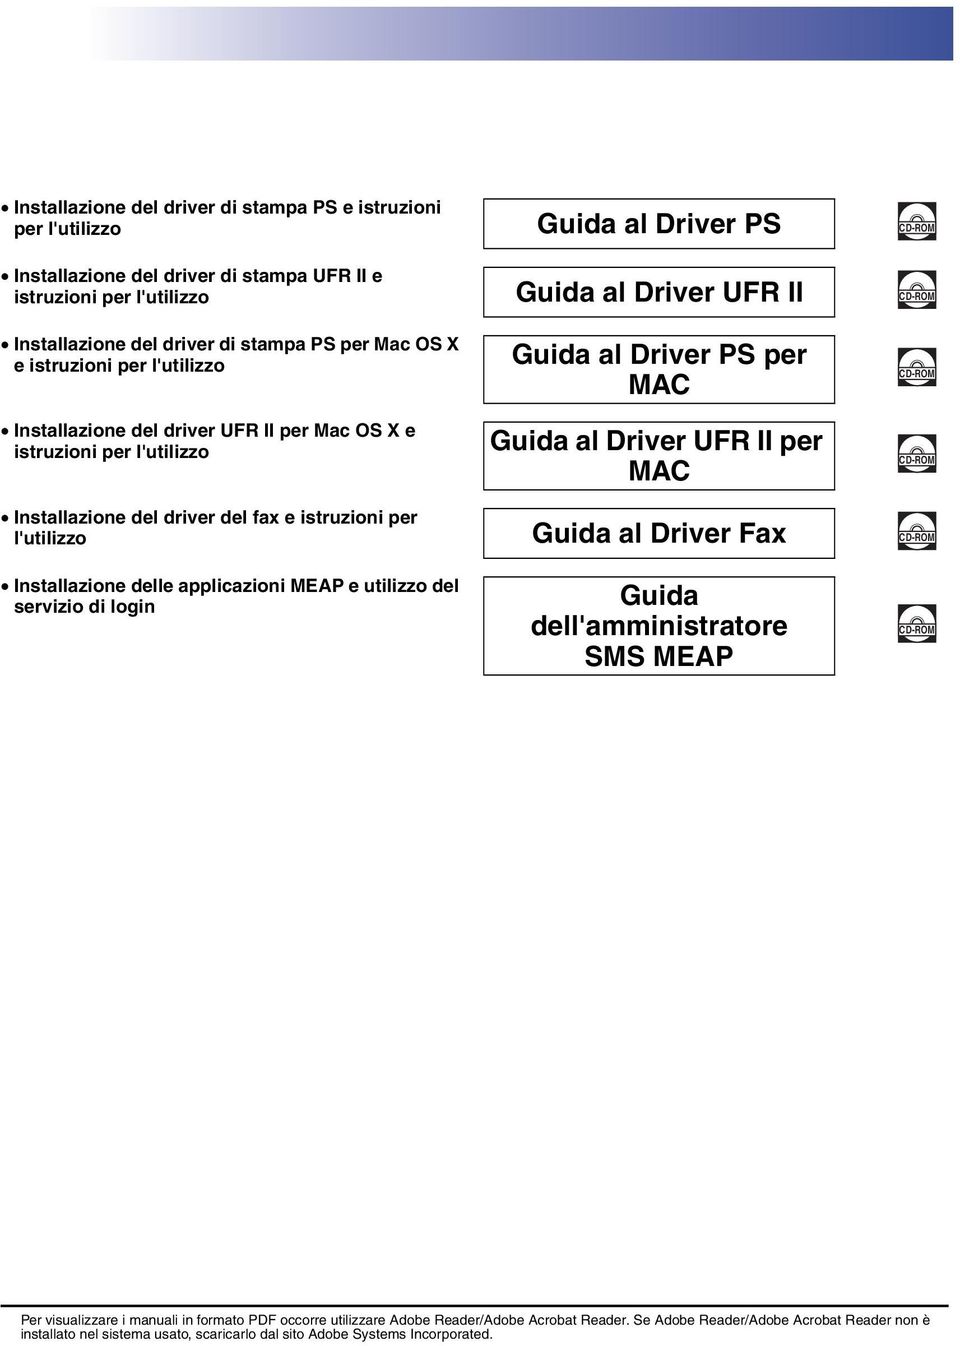 II per MAC CD-ROM CD-ROM Installazione del driver del fax e istruzioni per l'utilizzo Guida al Driver Fax CD-ROM Installazione delle applicazioni MEAP e utilizzo del servizio di login Guida